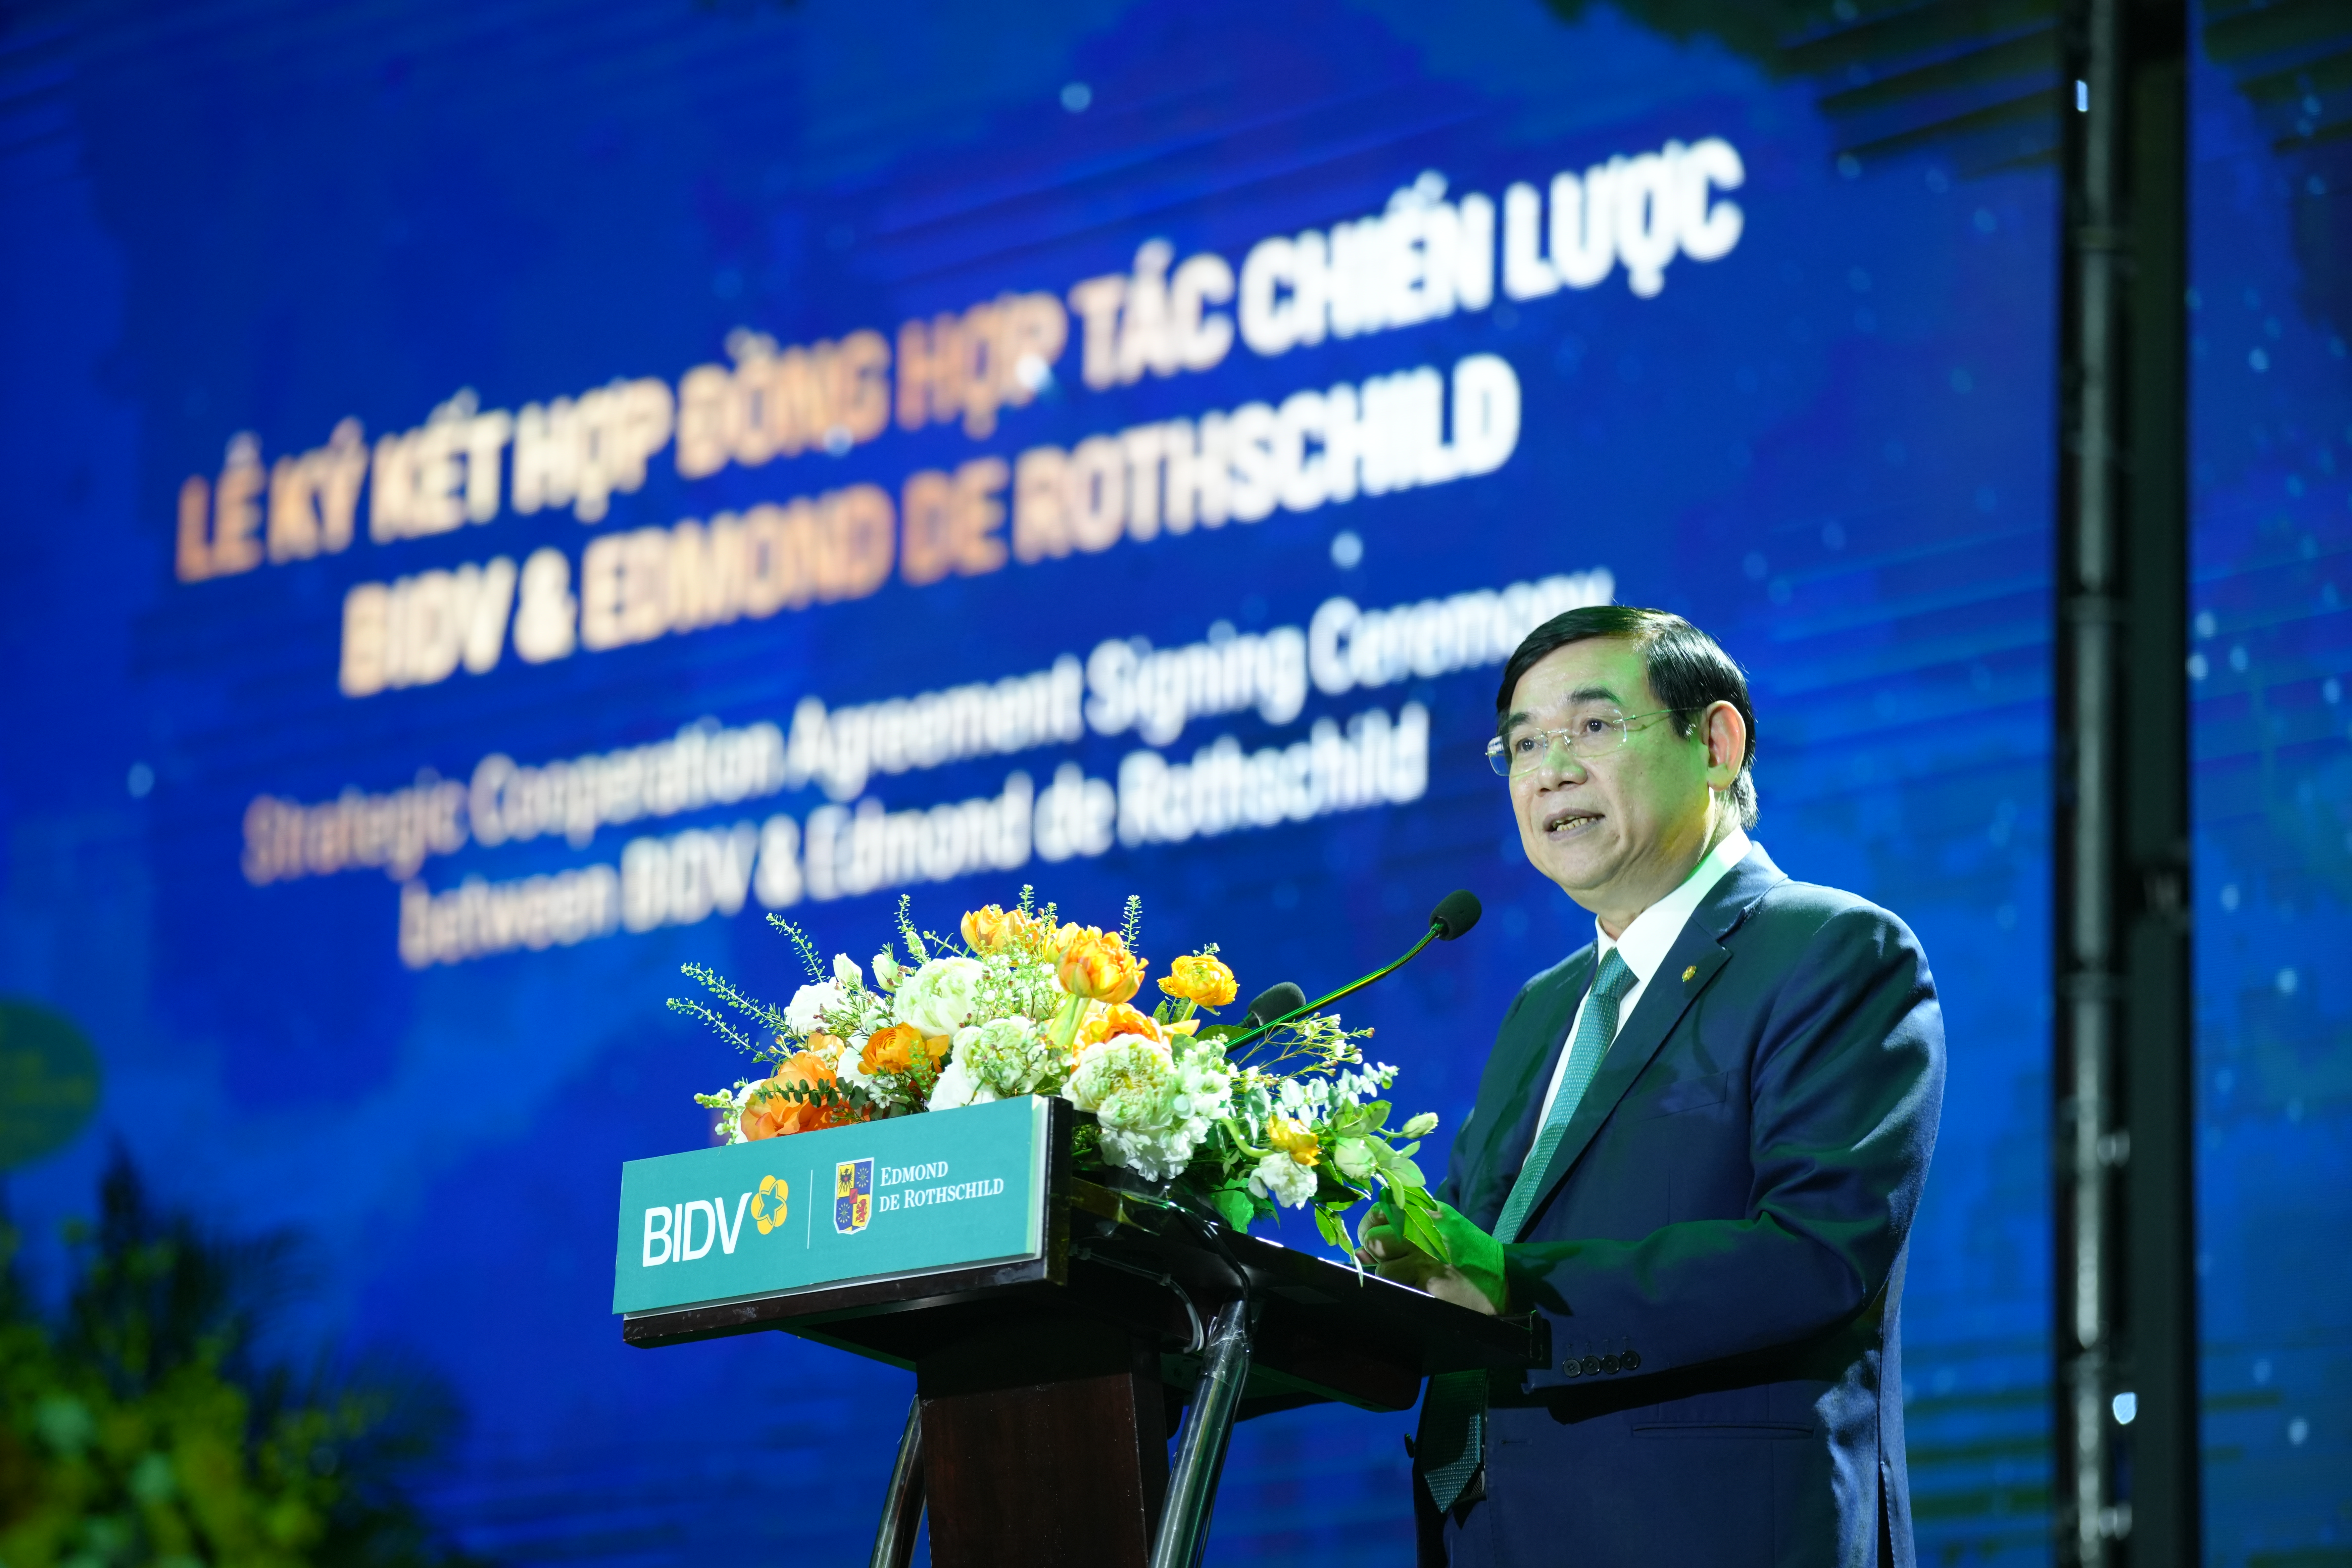 BIDV và Edmond de Rothschild hợp tác chiến lược cung cấp dịch vụ Private Banking hàng đầu Việt Nam - Ảnh 1